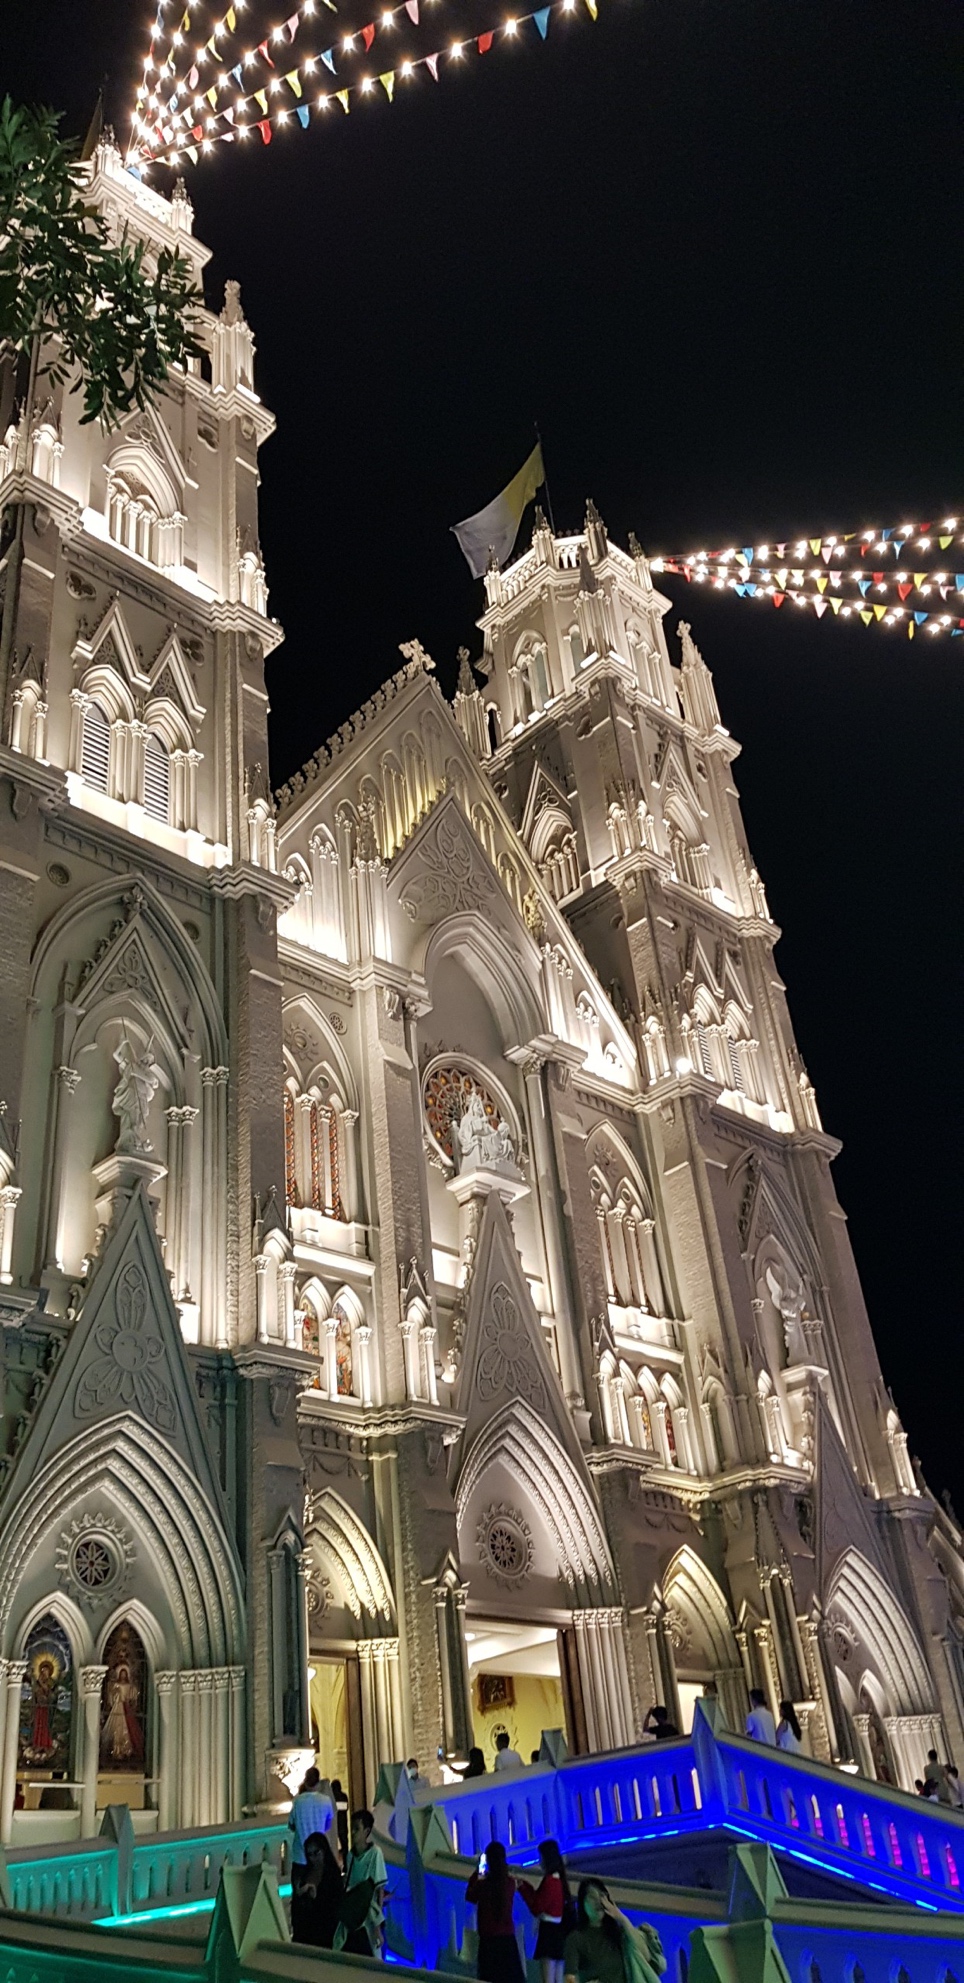 Nhà thờ kiến trúc Gothic tráng lệ ở Bà Rịa - Vũng Tàu mùa Giáng Sinh - Ảnh 3.